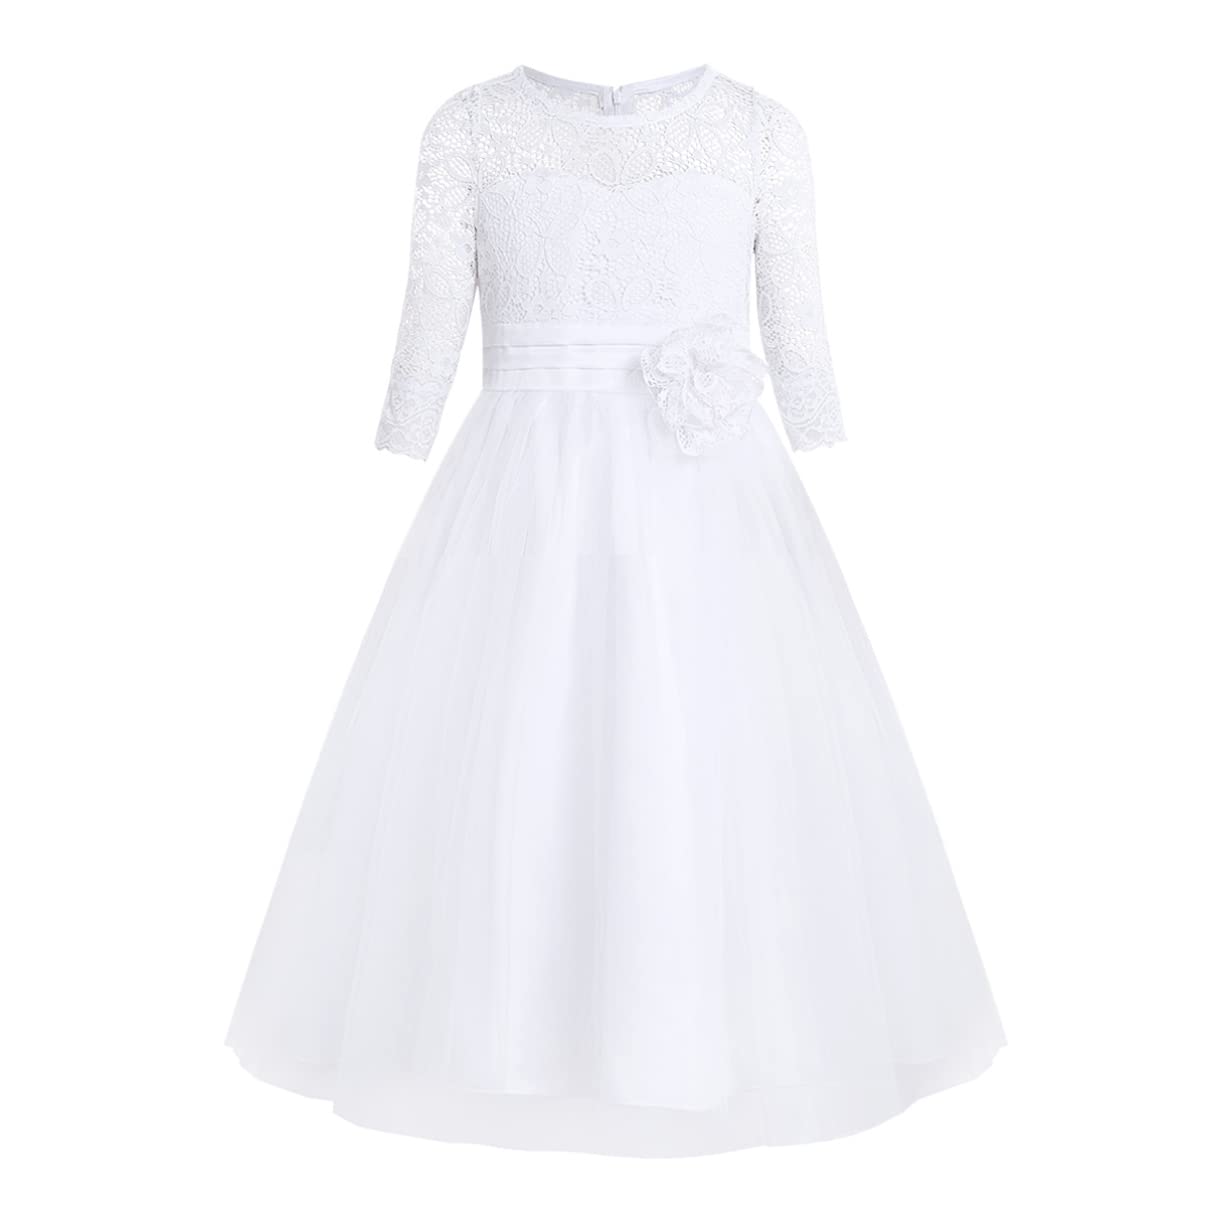 iixpin Mädchen Prinzessin Kleid Halb-Arm Weiß Kommunionkleid Party Kleid Spitze Festlich Festzug Brautjungfernkleid 104-164 Weiß 128